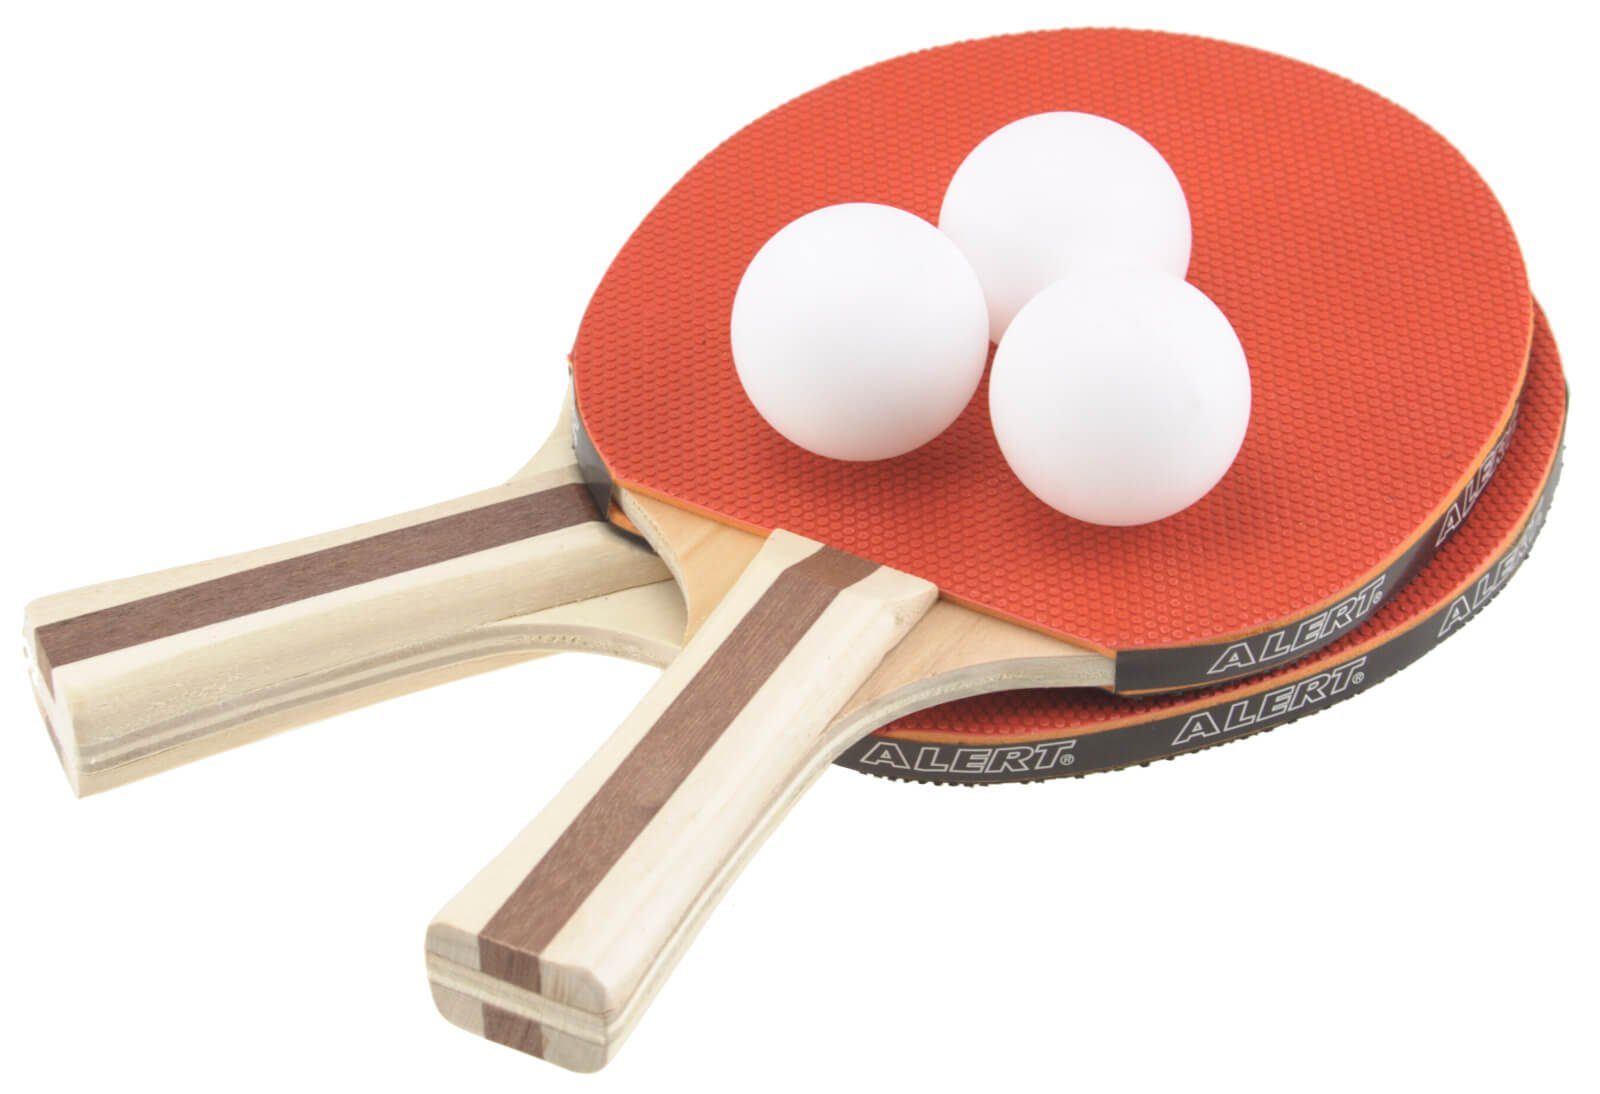 Mini Ping Pong Spiel-Set mit Tischtennis Schläger, Netz und Ball